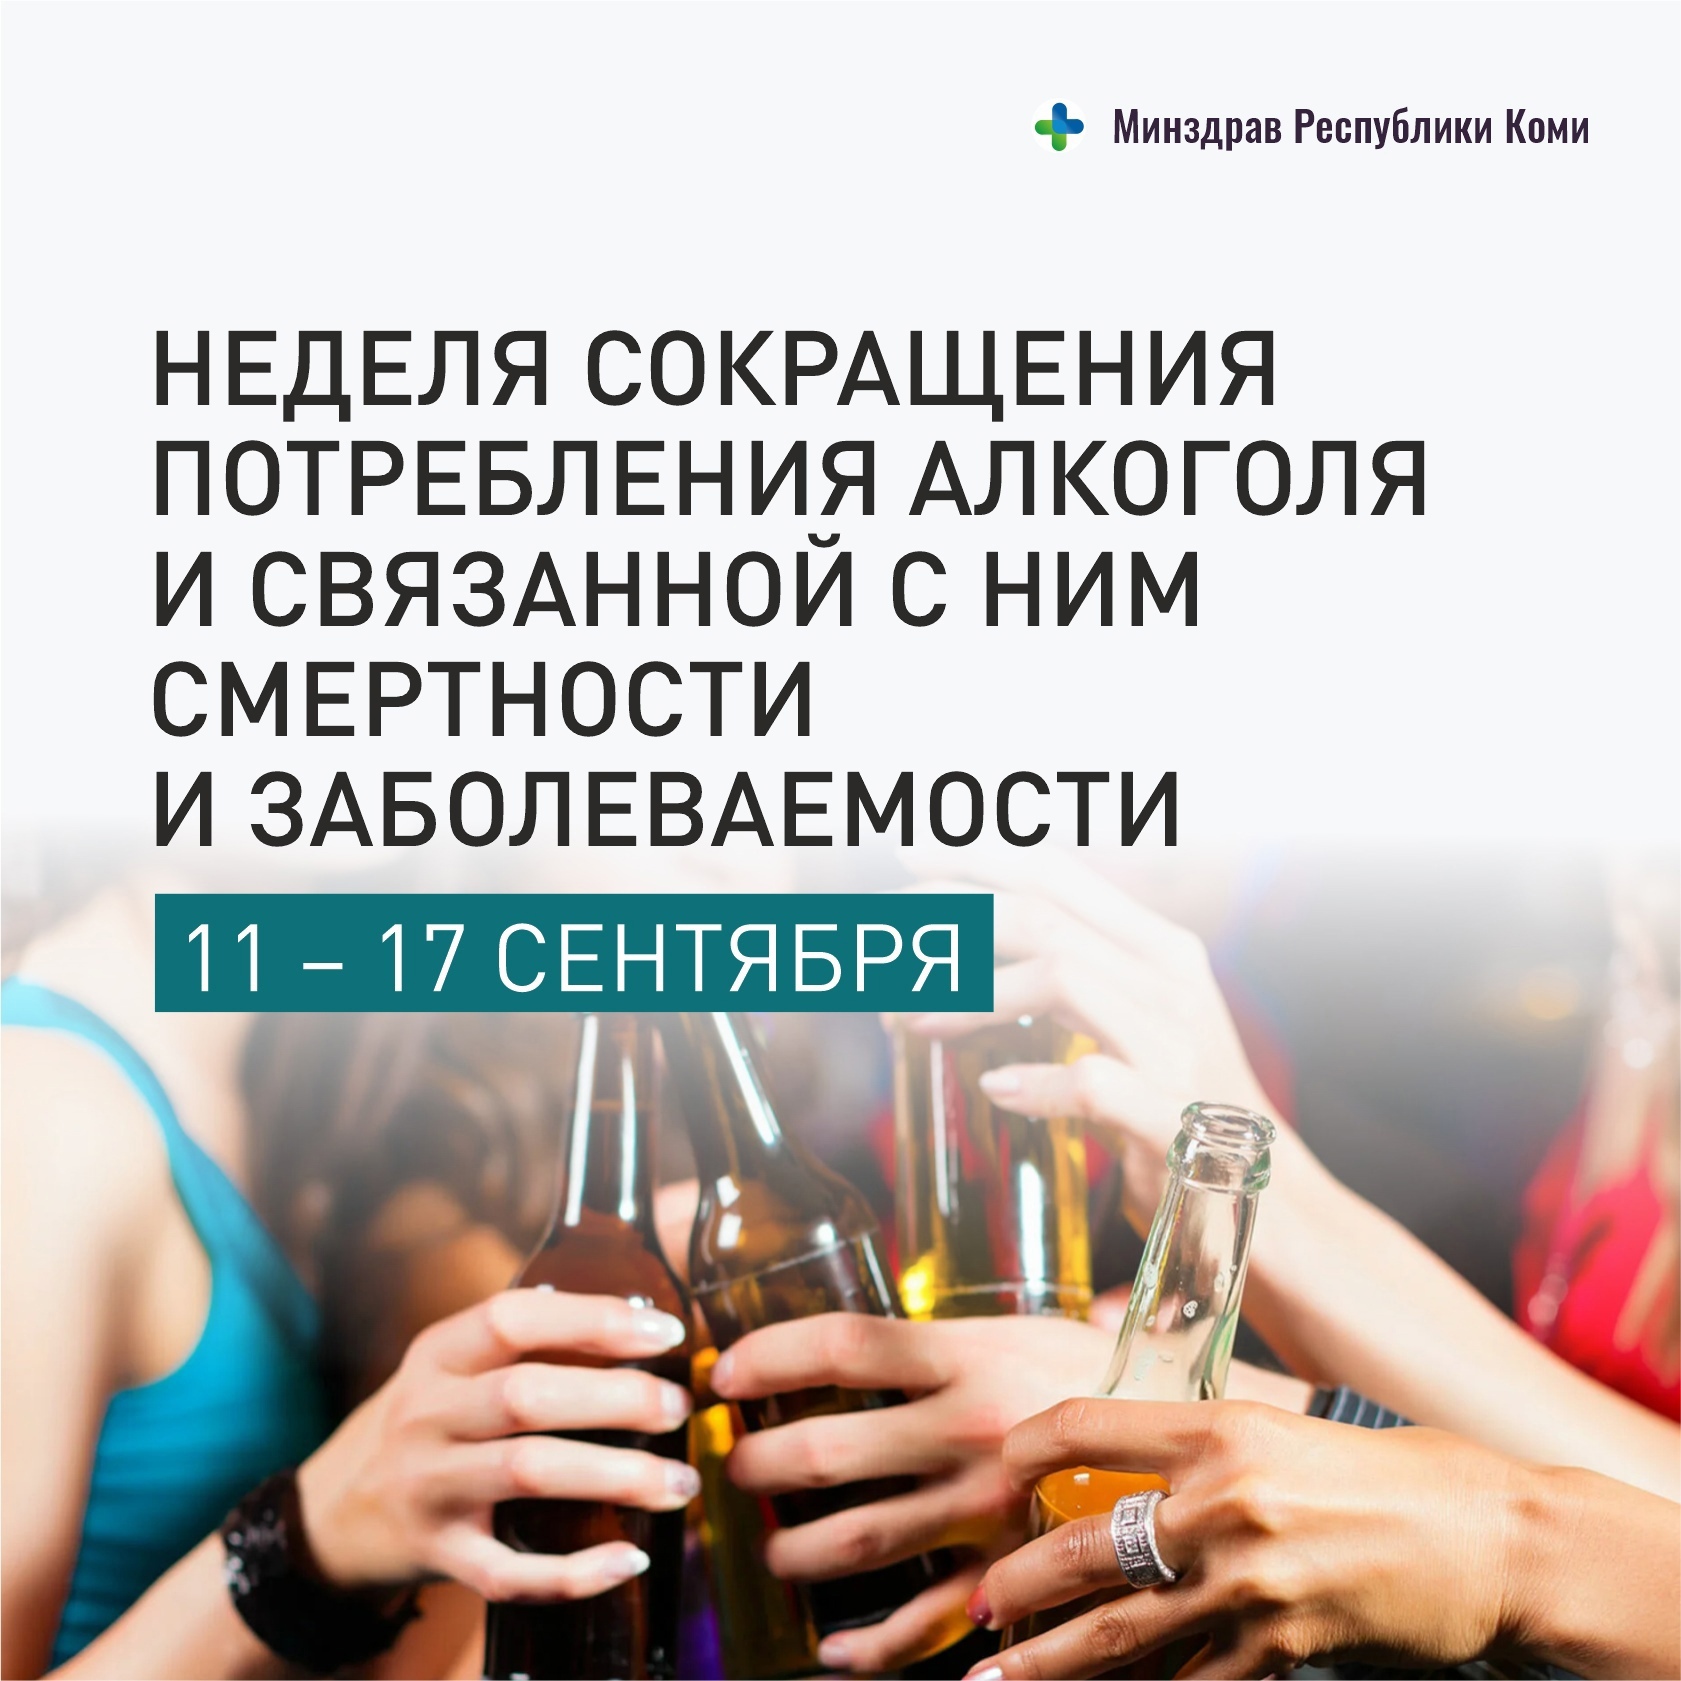 Неделя сокращения потребления алкоголя и связанной с ним смертности и заболеваемости.